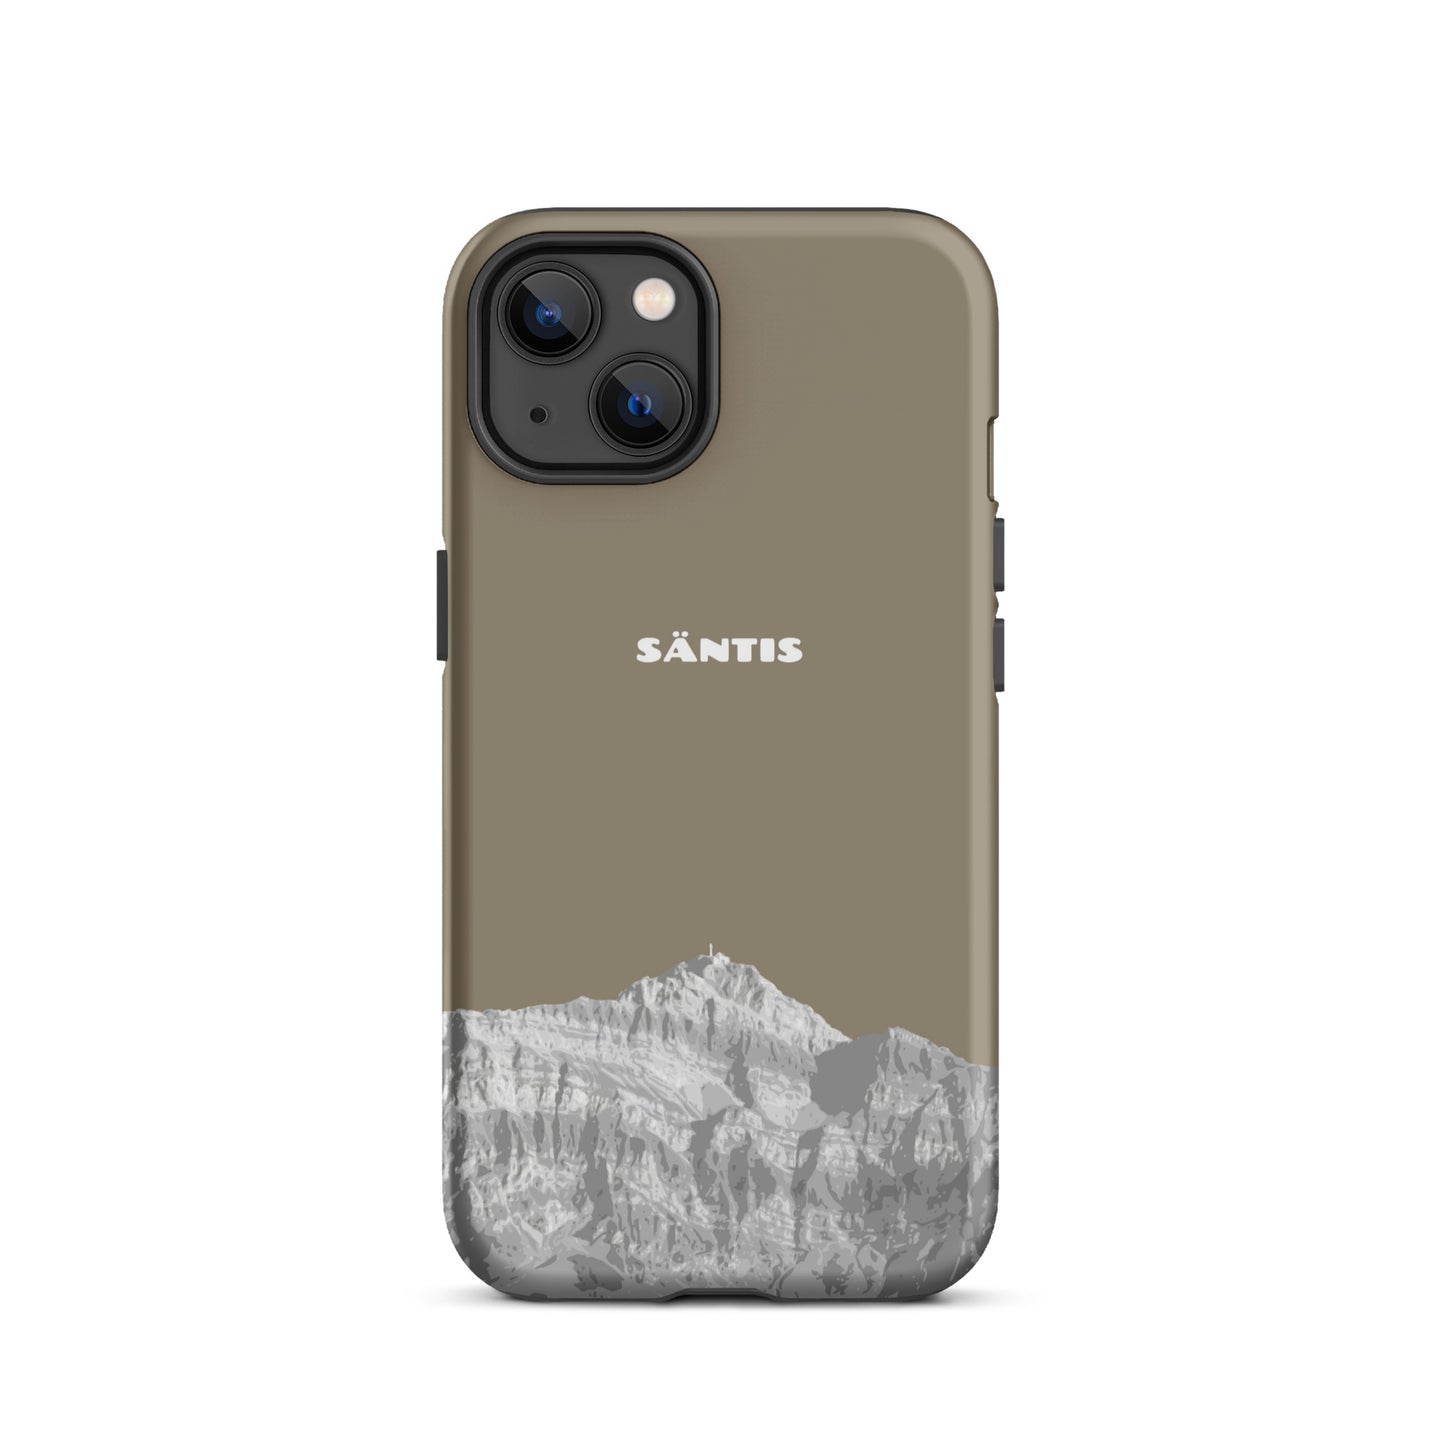 Hülle für das iPhone 13 von Apple in der Farbe Graubraun, dass den Säntis im Alpstein zeigt.